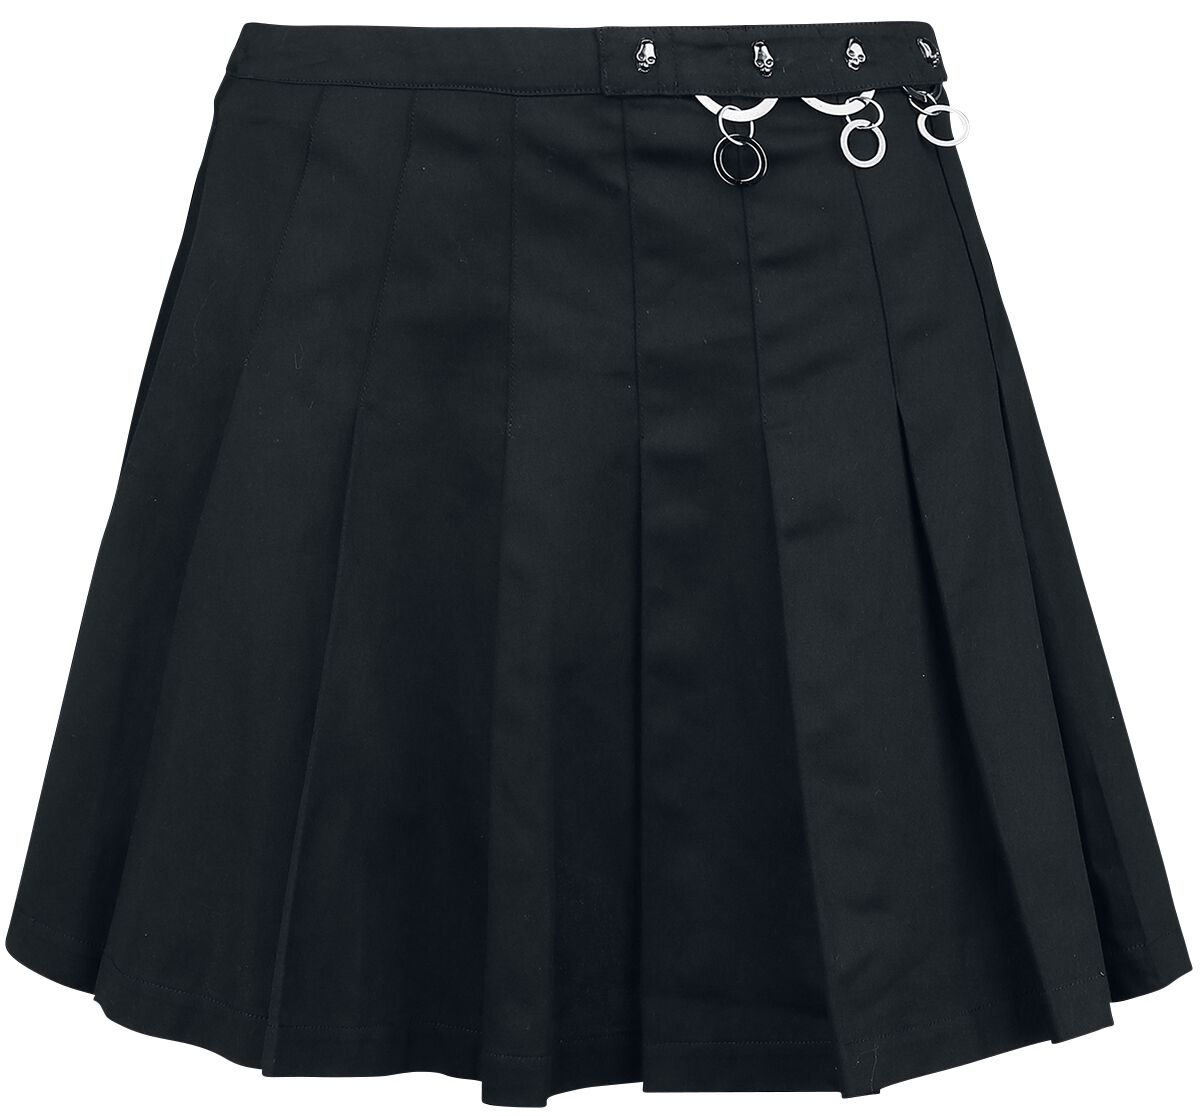 Banned Alternative - Gothic Kurzer Rock - Pleated Ring Skirt - XS bis XL - für Damen - Größe L - schwarz